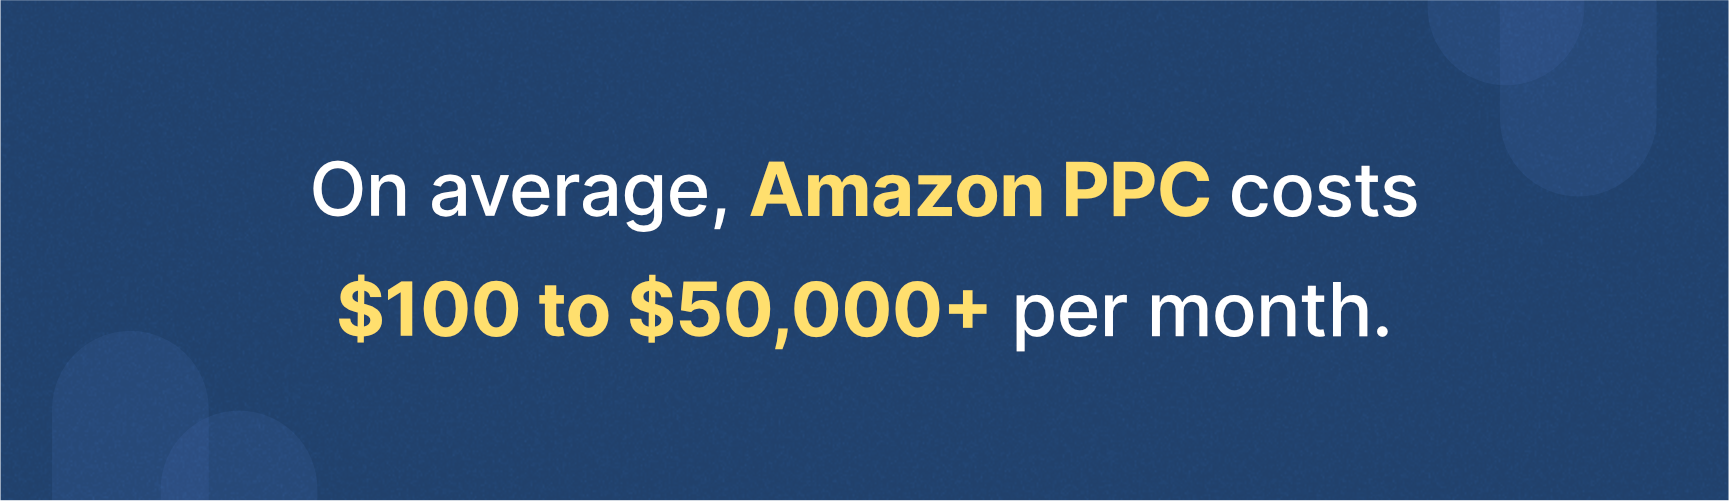 average Amazon PPC costs